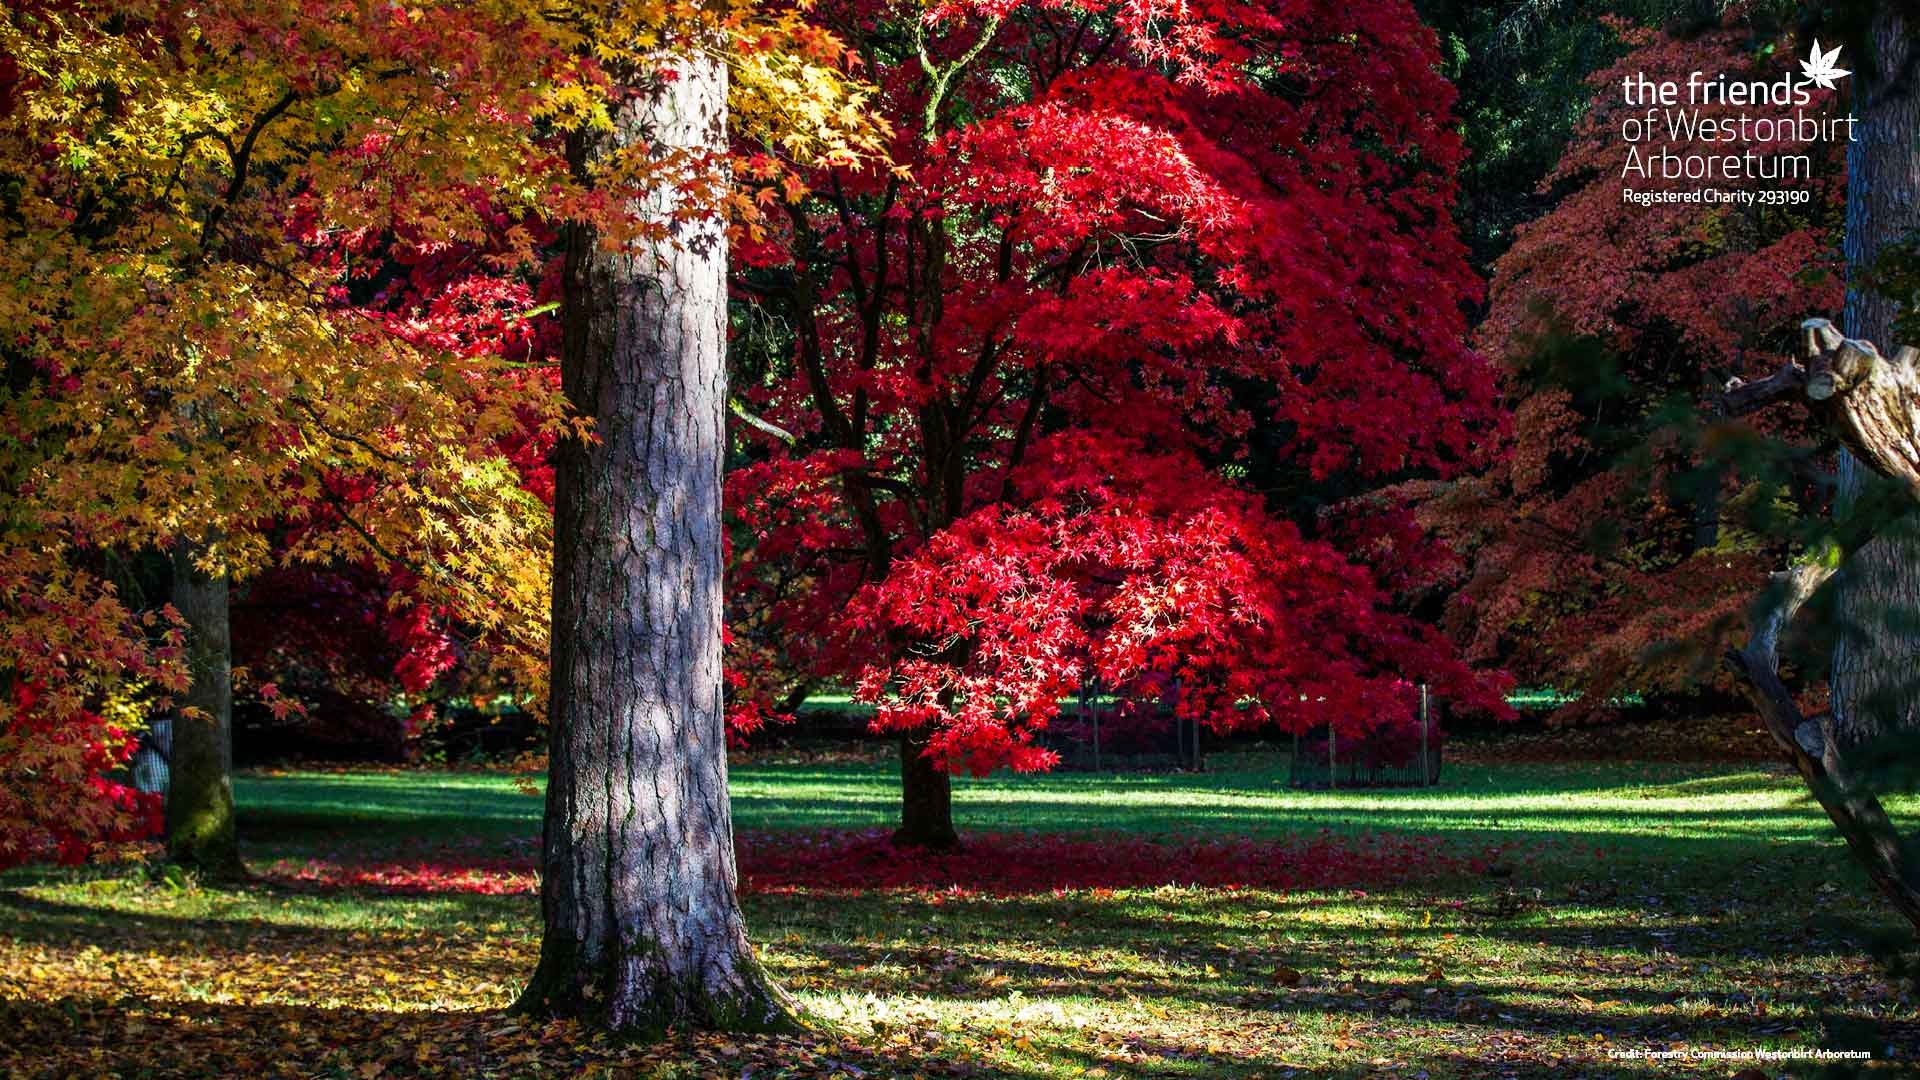 Autumn colour at Westonbirt Arboretum